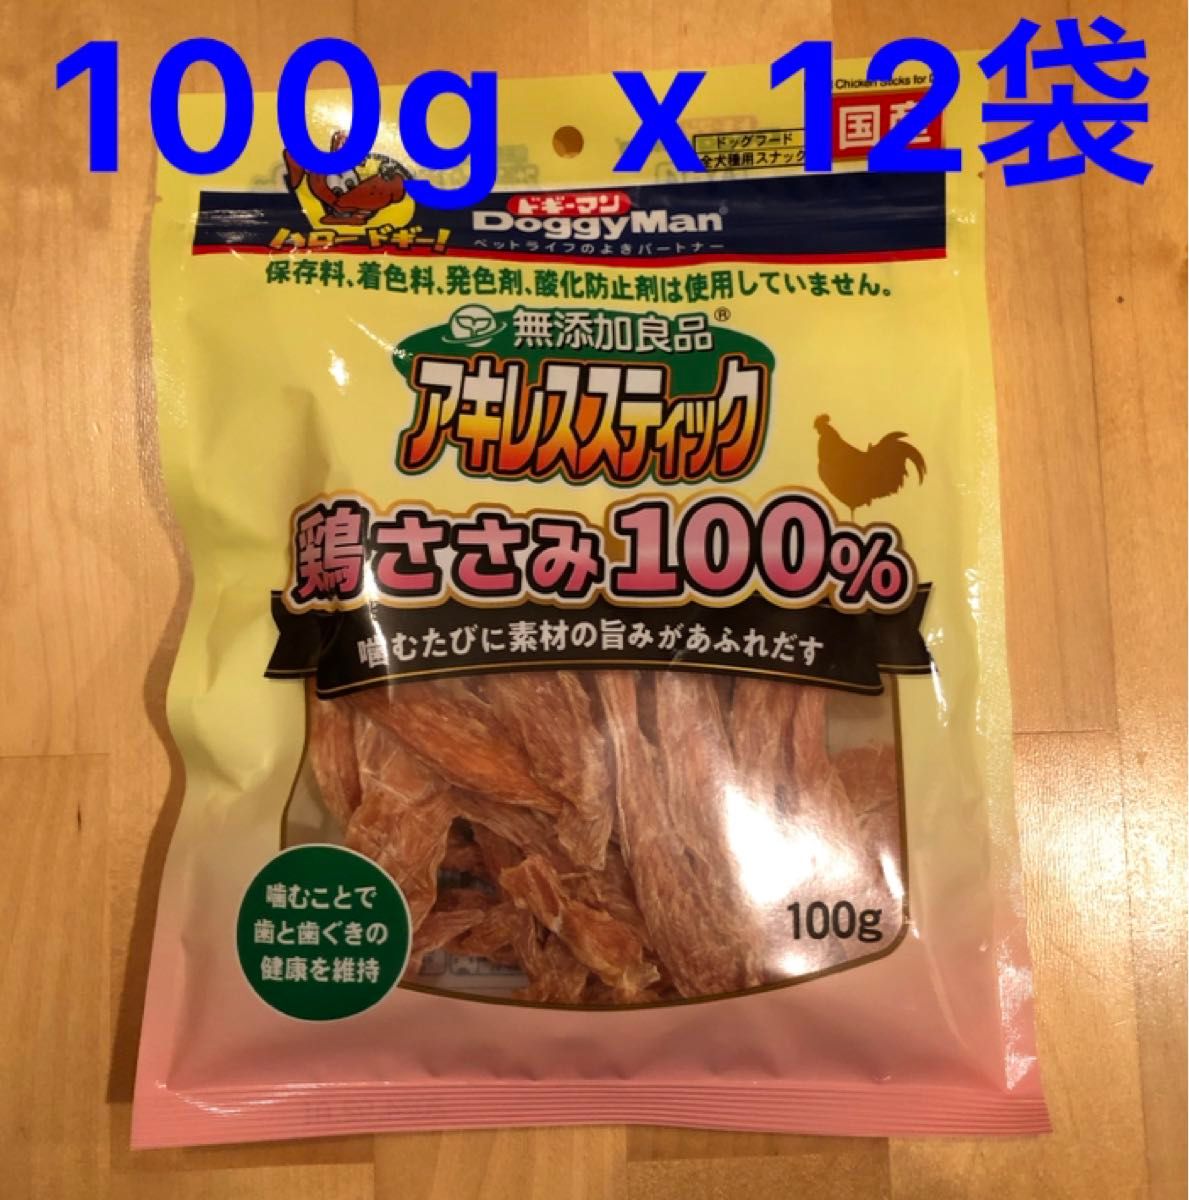 ドギーマン 無添加良品 アキレススティック 鶏ささみ100% 100g ×12袋